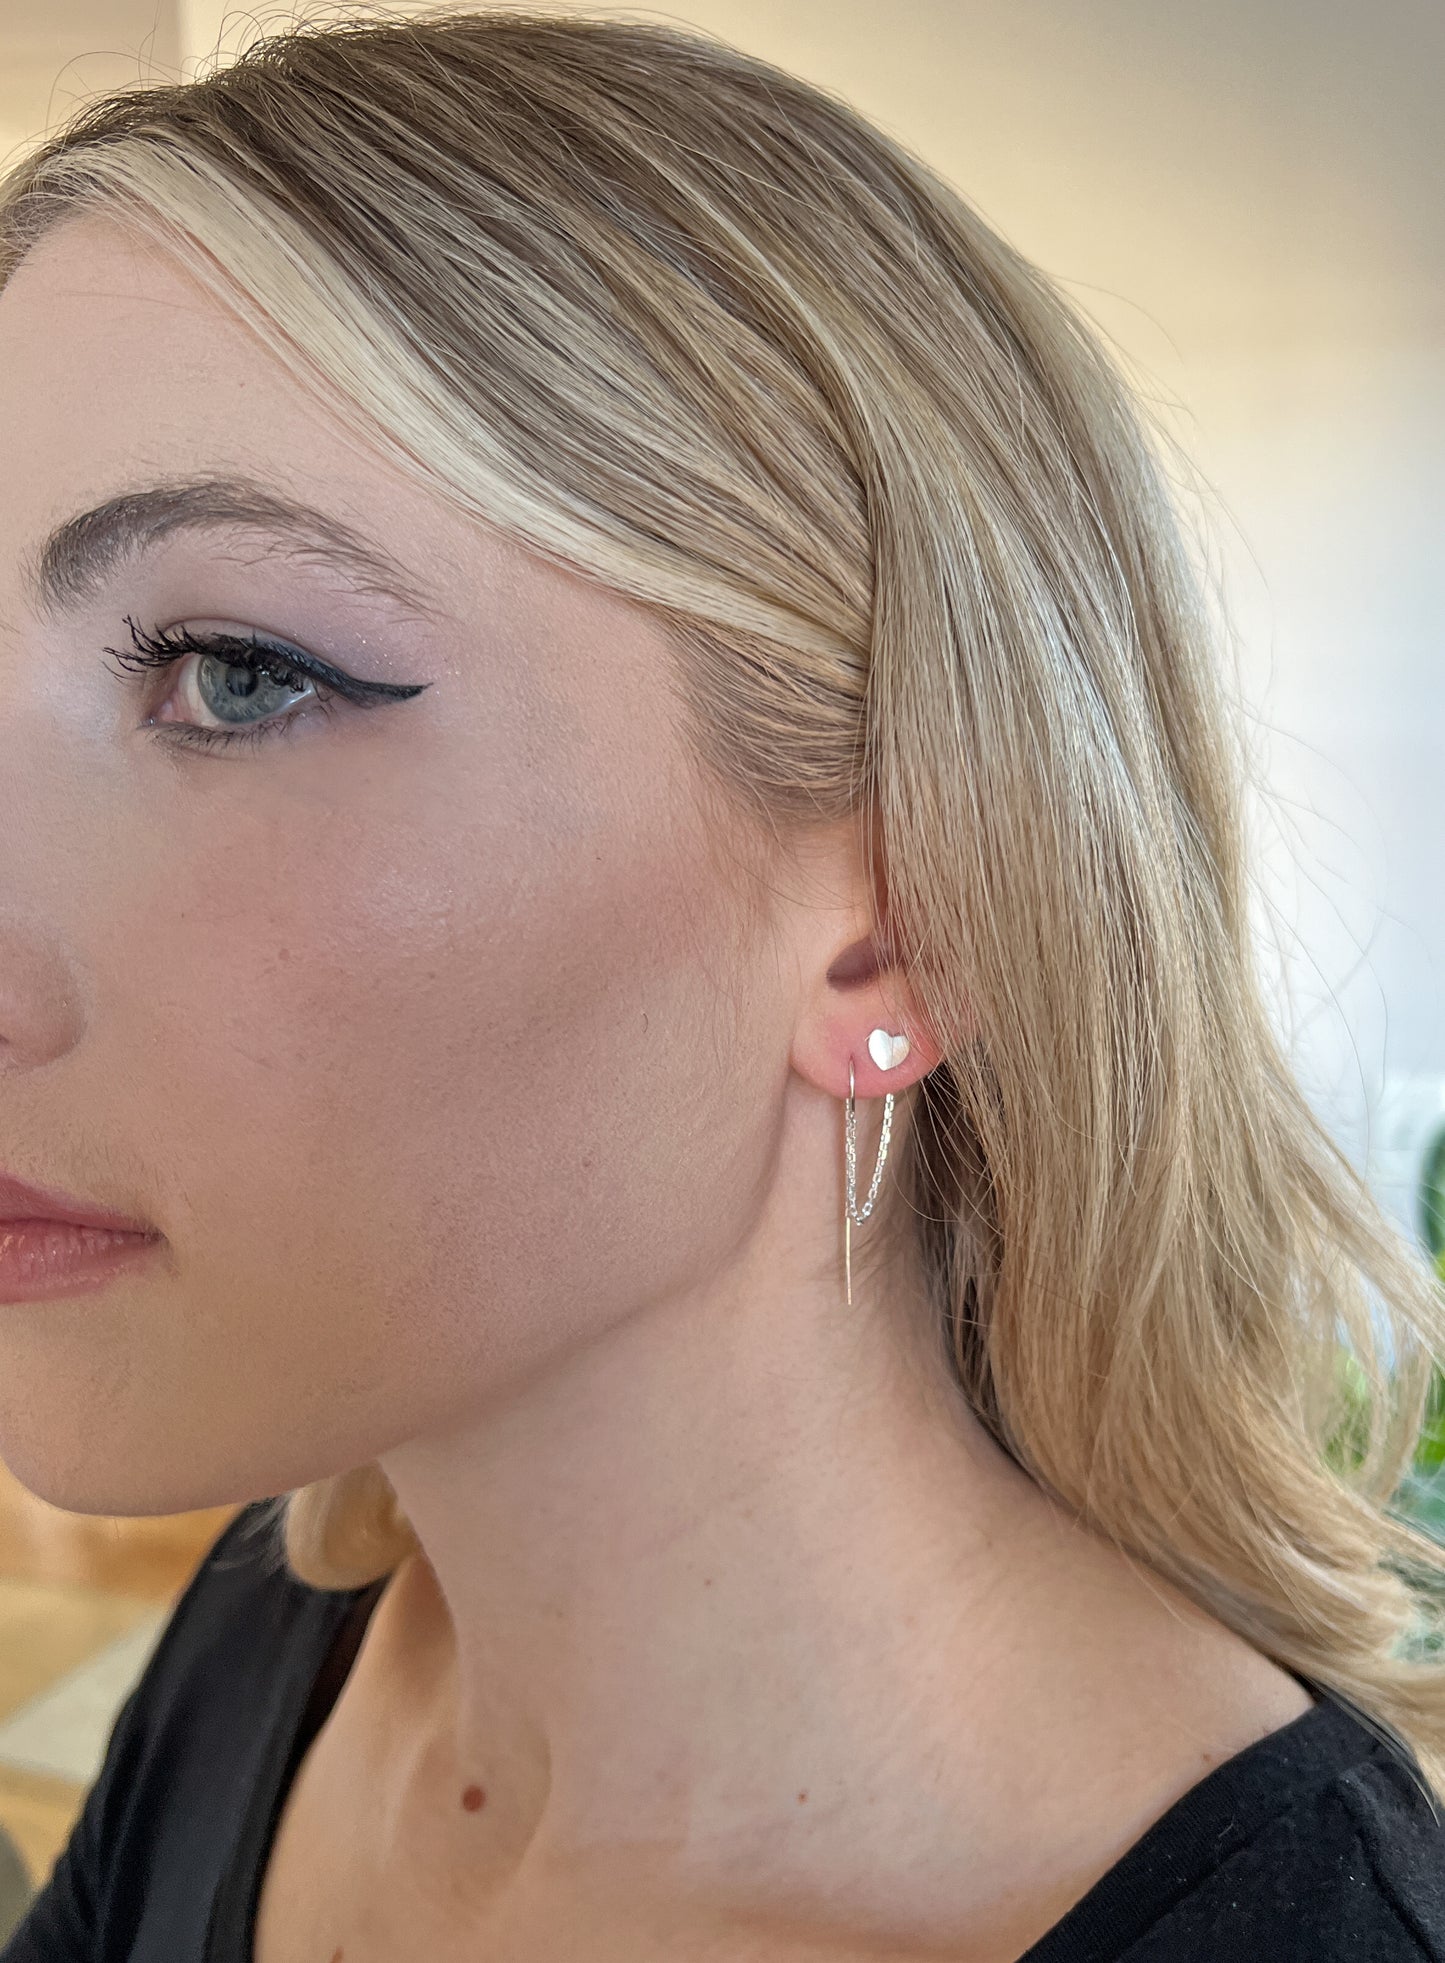 Sterling Silver Heart Double Piercing Earrings - Two Hole Double Earrings for Women